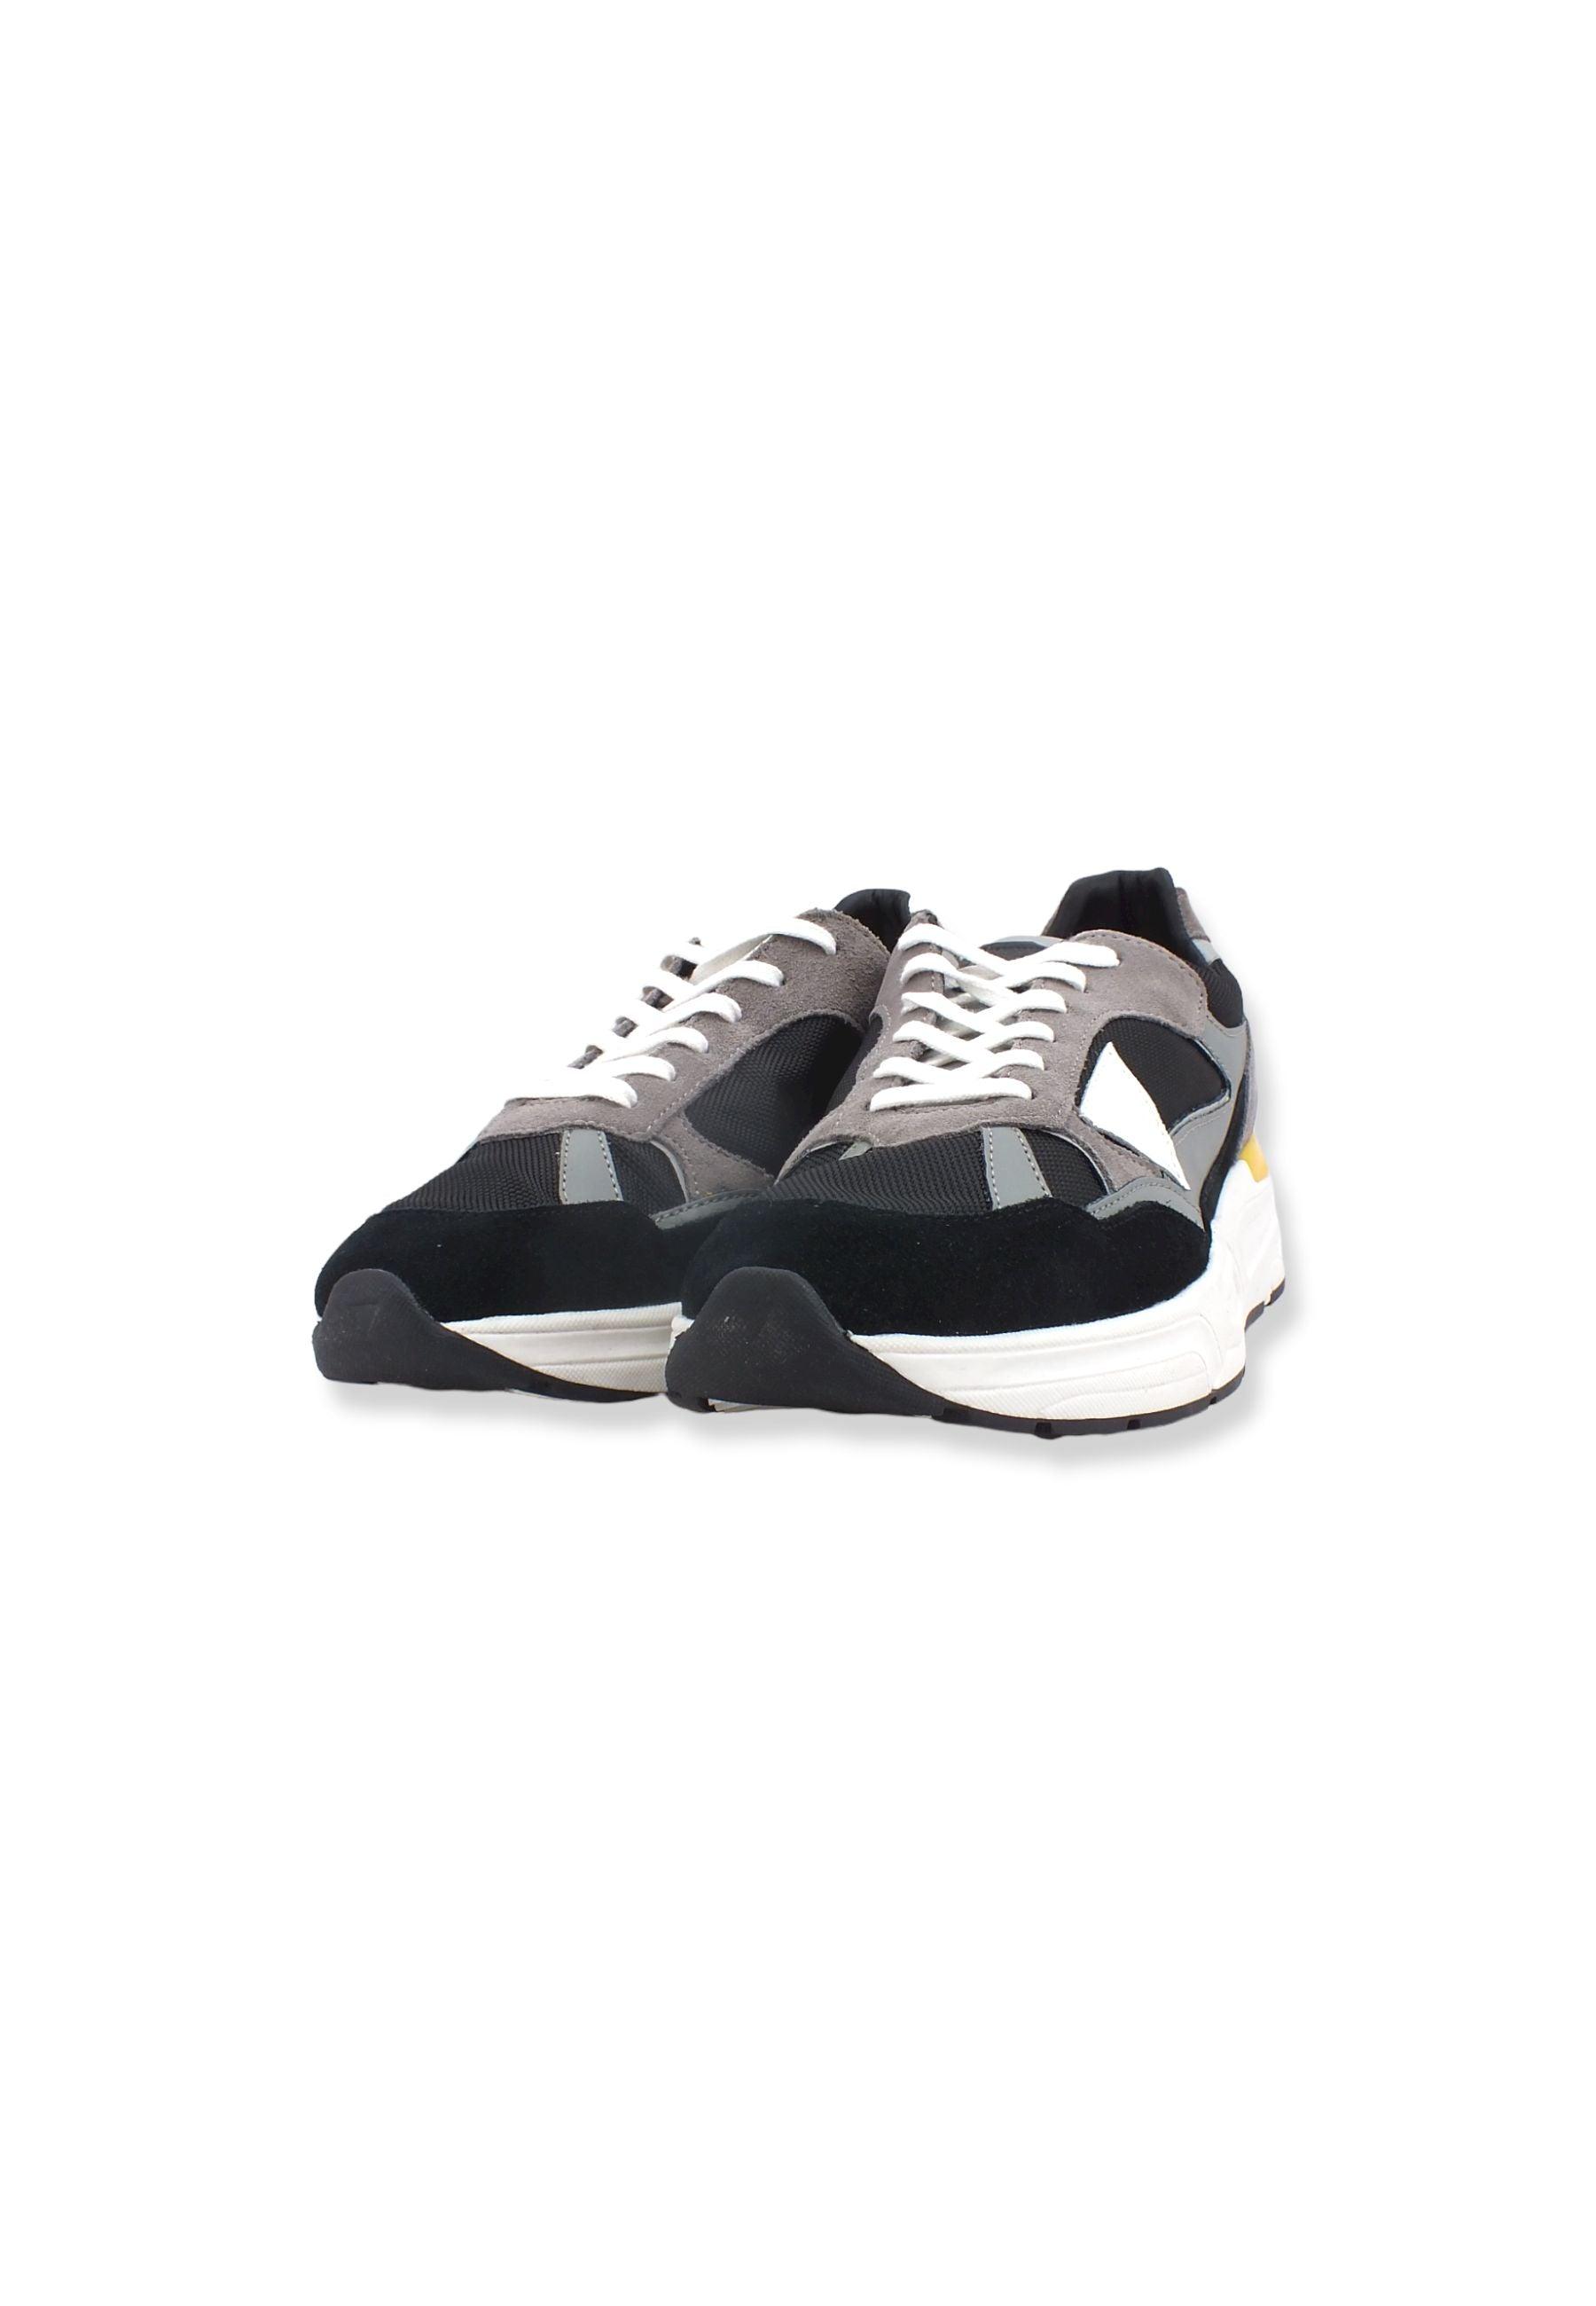 GUESS Sneaker Uomo Running Suede Black Multi FM5IMOELE12 - Sandrini Calzature e Abbigliamento